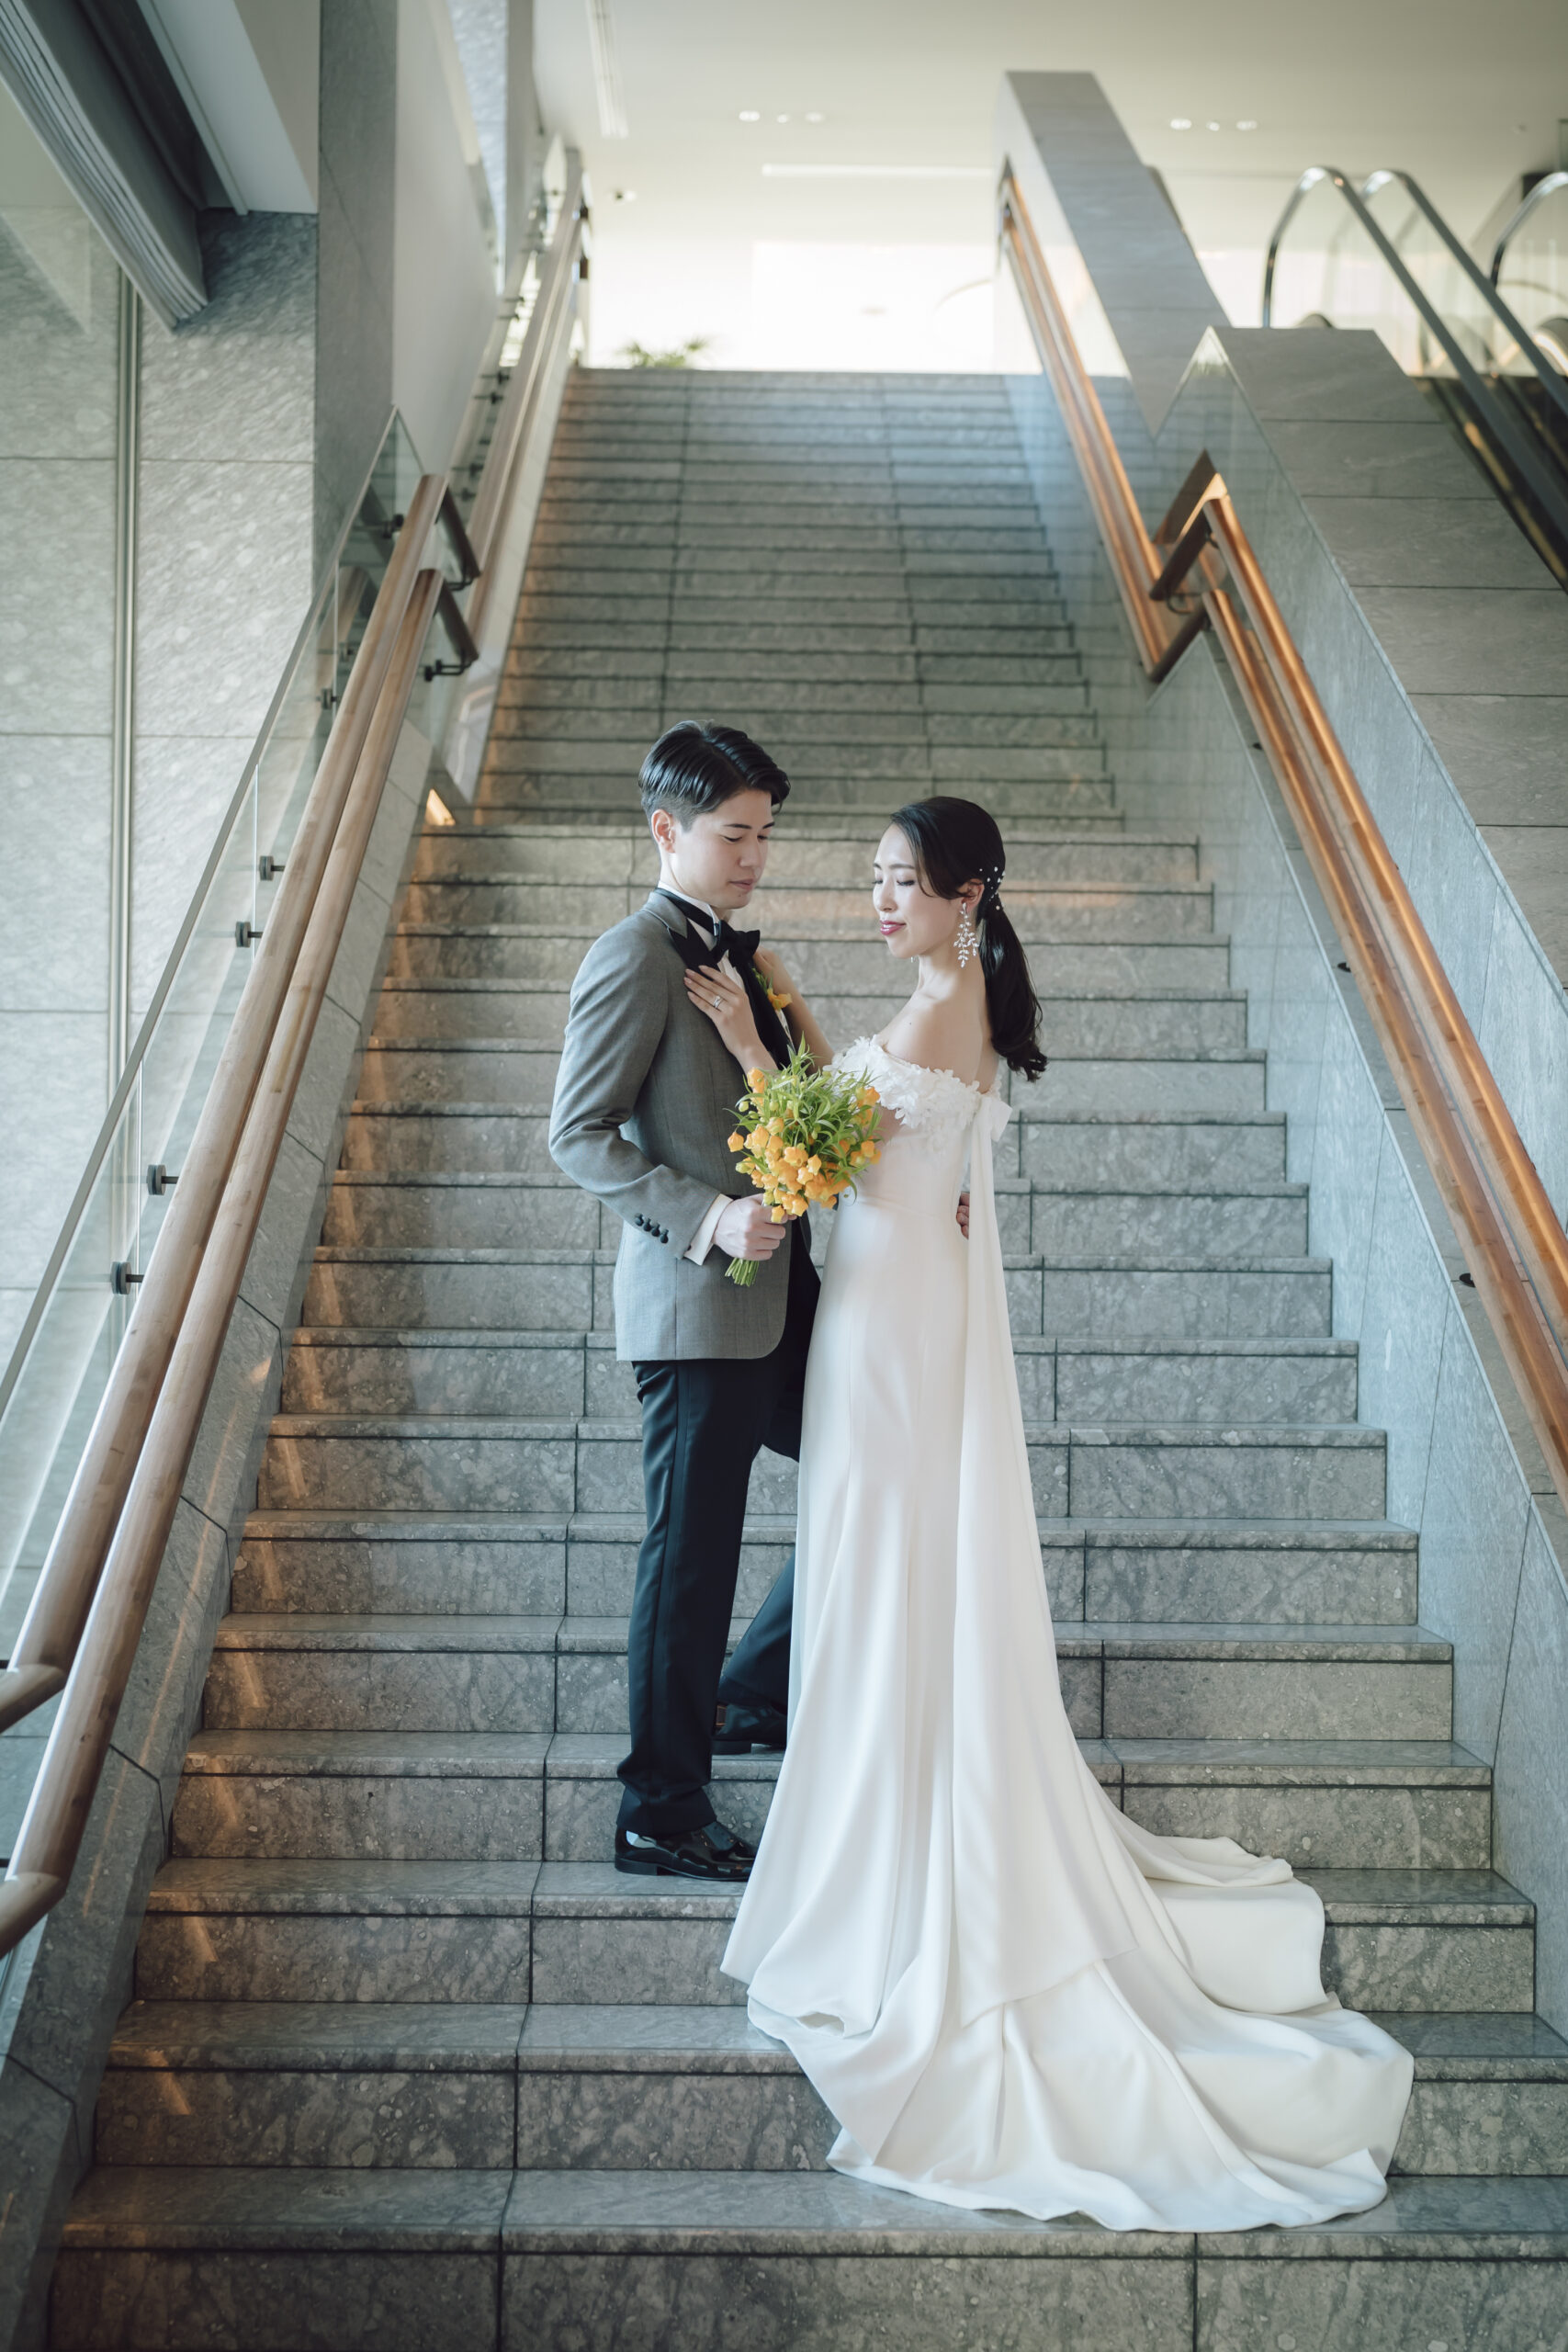 パレスホテル東京の大階段で、ザトリートドレッシングでセレクトされたヴィクターアンドロルフマリアージュのウェディングドレスを纏うご新婦様